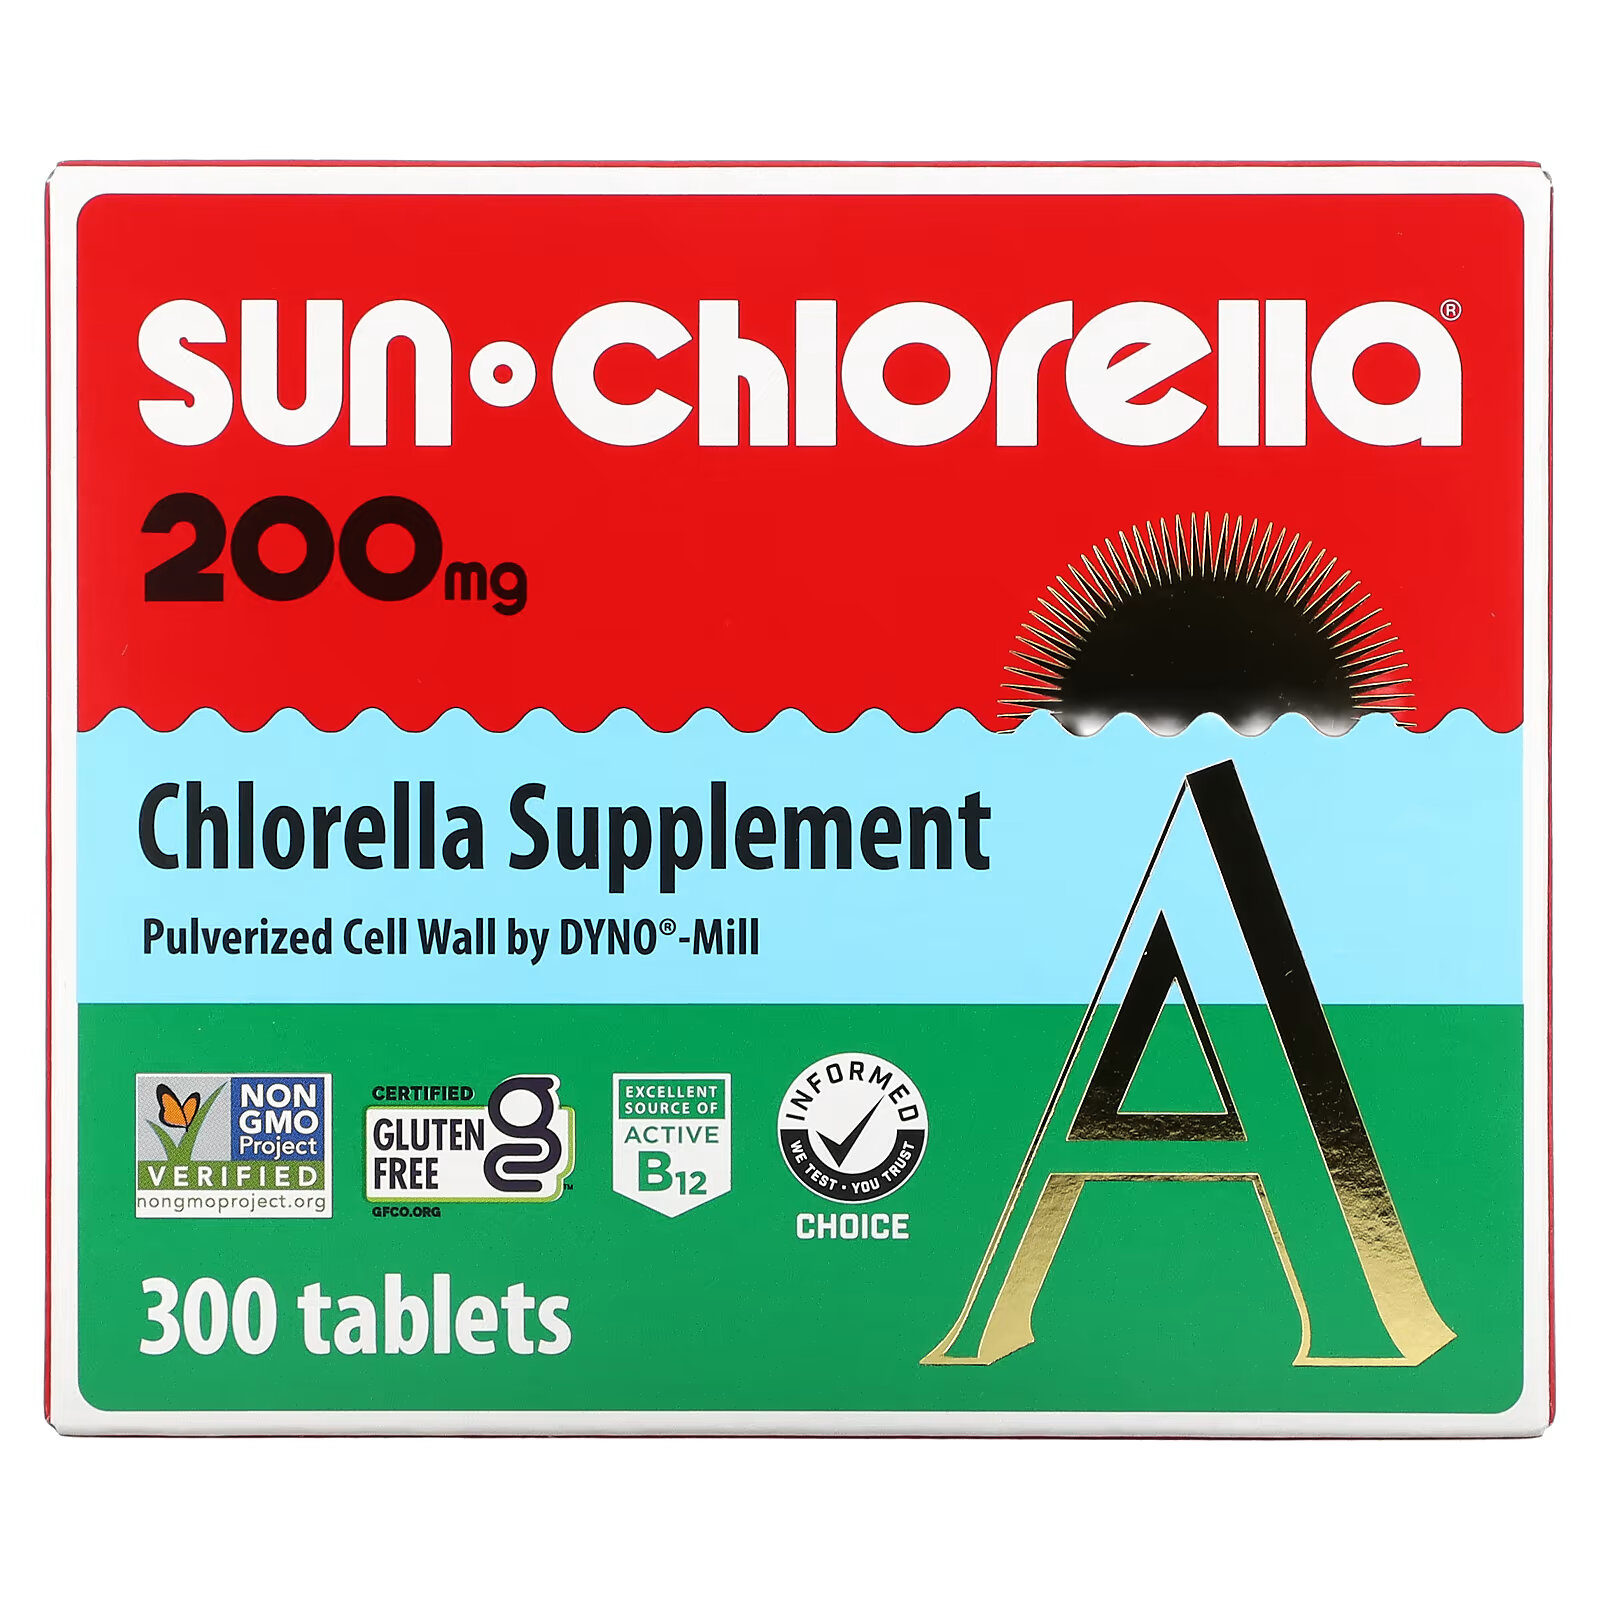 Sun Chlorella, добавка с хлореллой, 200 мг, 300 таблеток